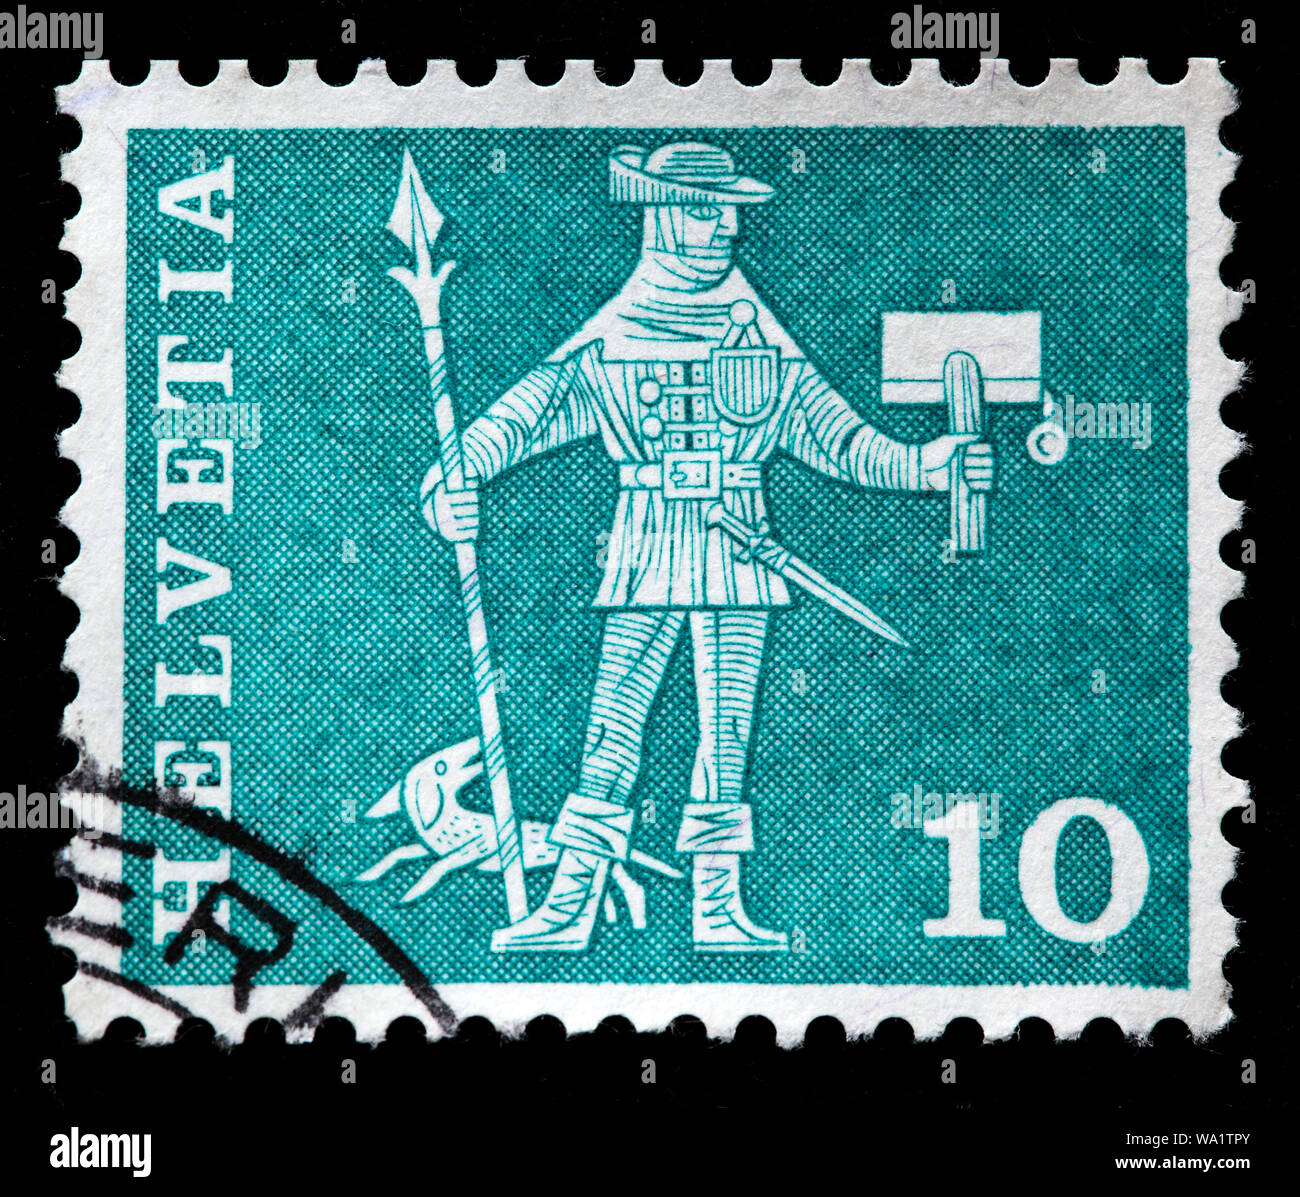 Messaggero di Svitto, xv secolo, francobollo, Svizzera, 1964 Foto Stock